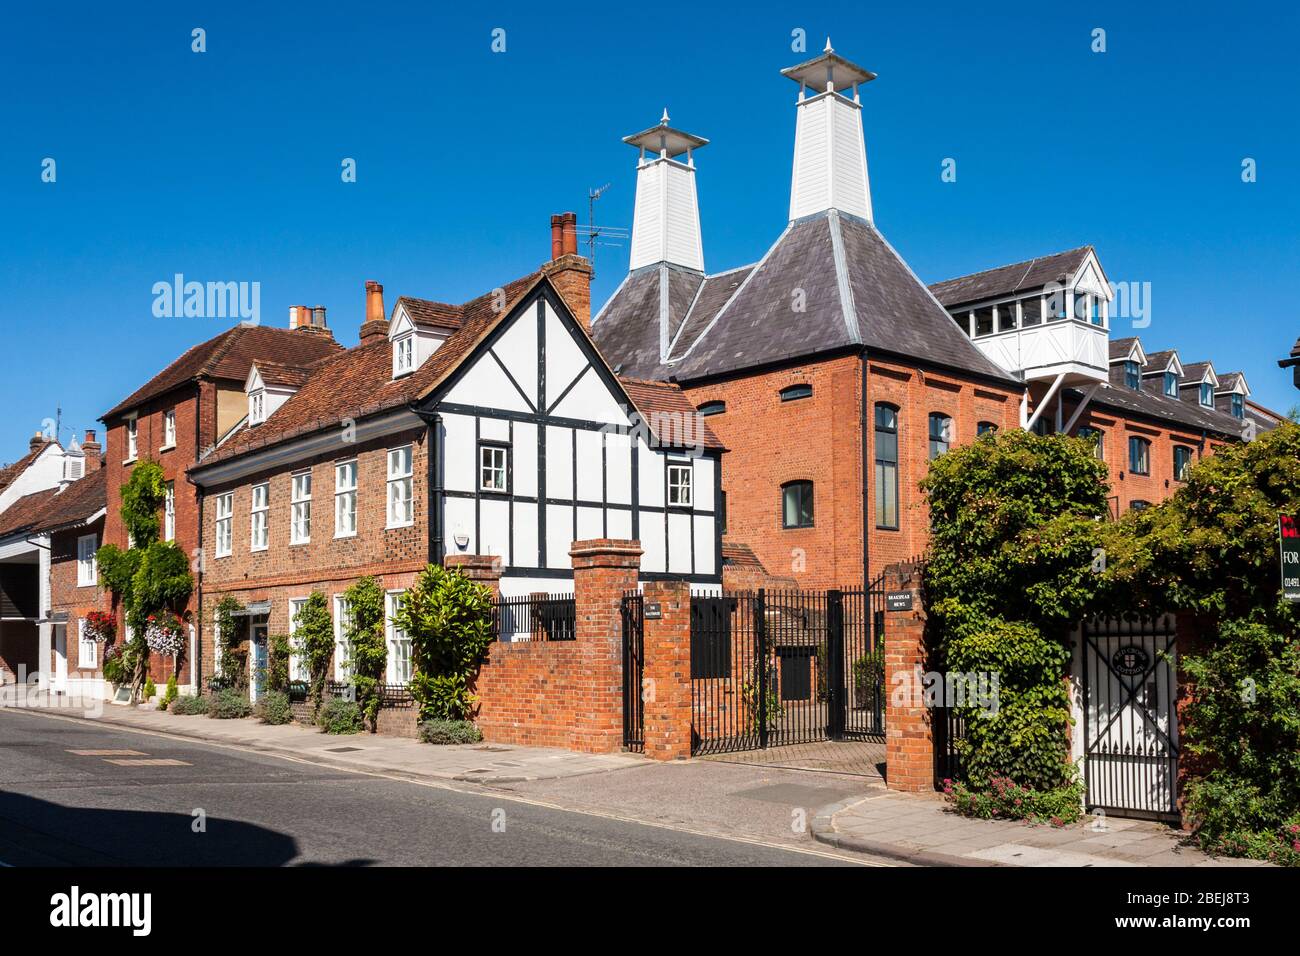 Centre-ville brasserie transformée malt House, propriété, maisonnettes à Henley-on-Thames, Oxfordshire, Angleterre, GB, Royaume-Uni. Banque D'Images